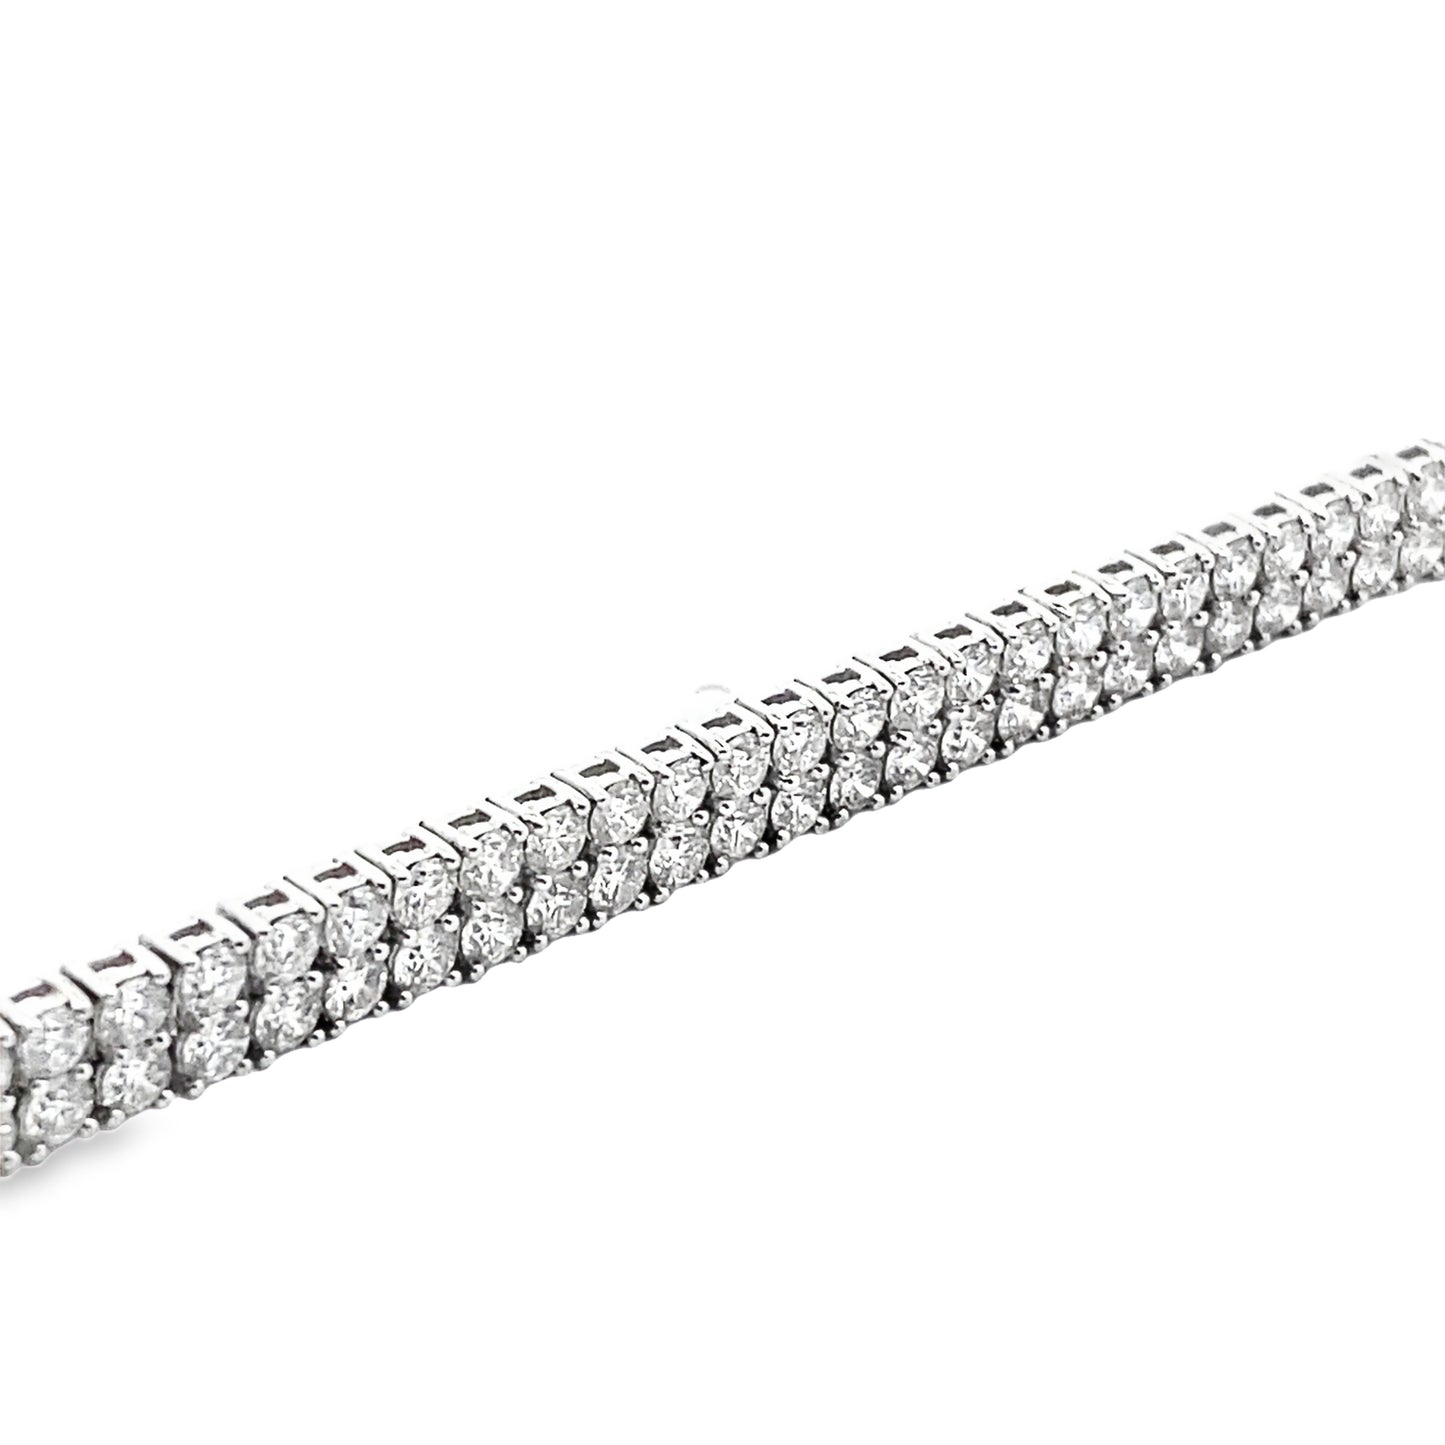 Double Row Diamond Tennis Bracelet in 14K White Gold